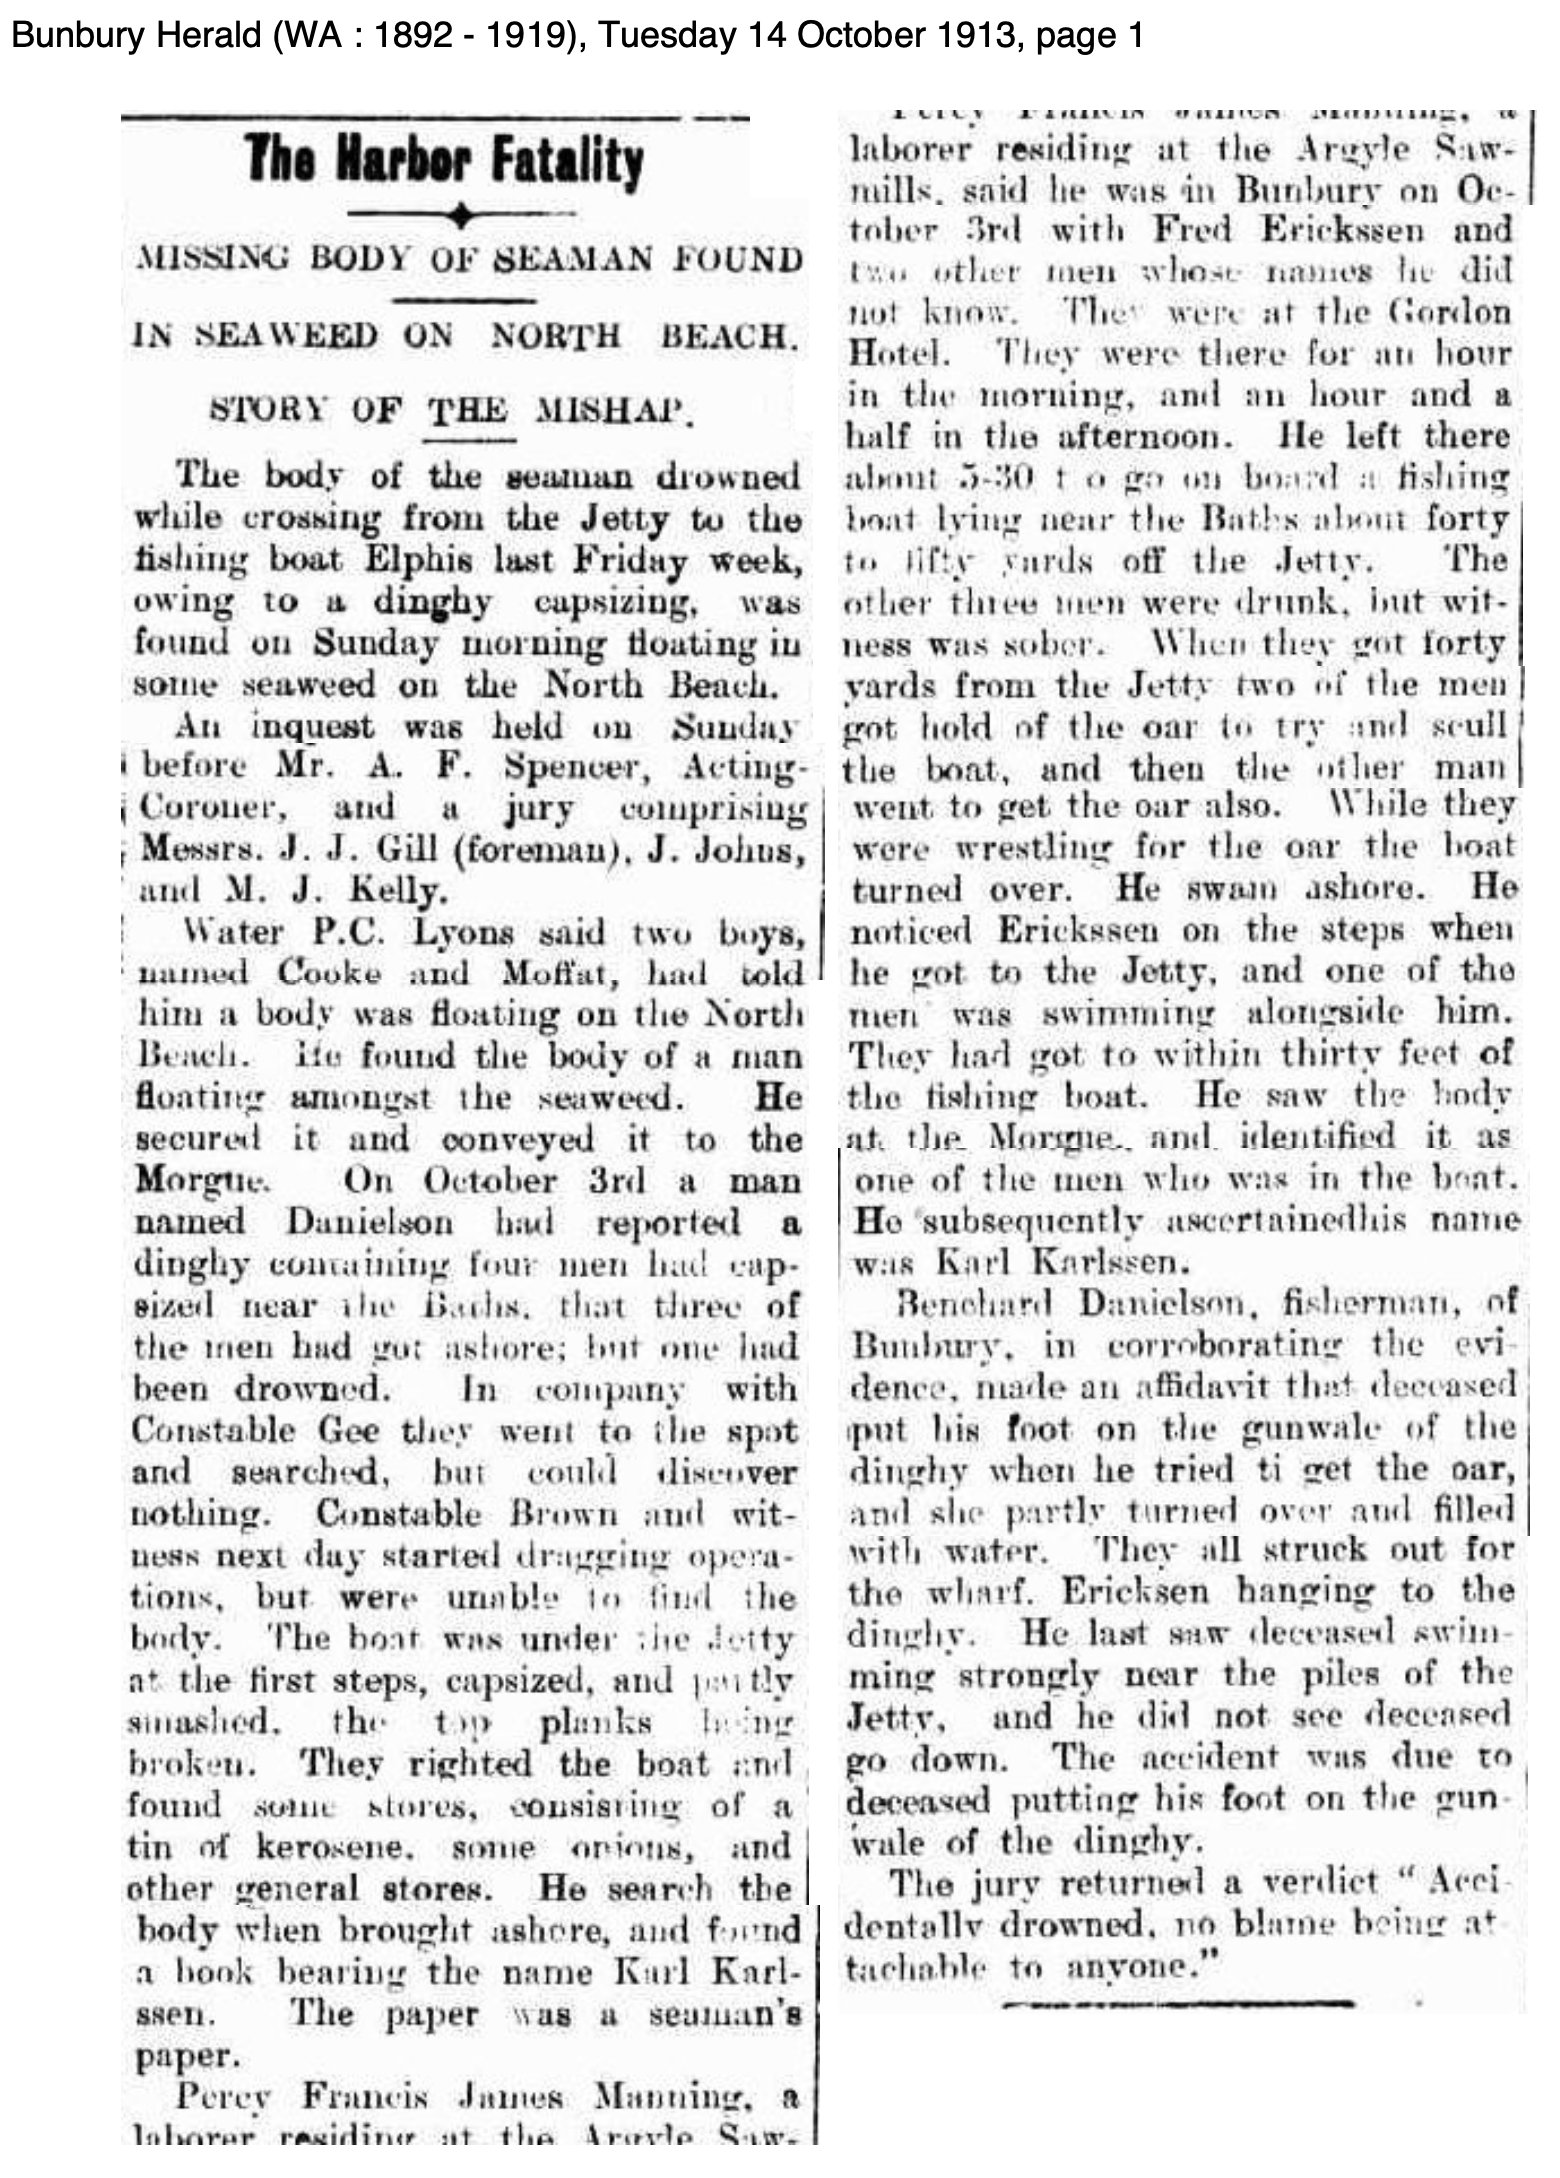 The Bunbury Herald, Tuesday 14 October 1913